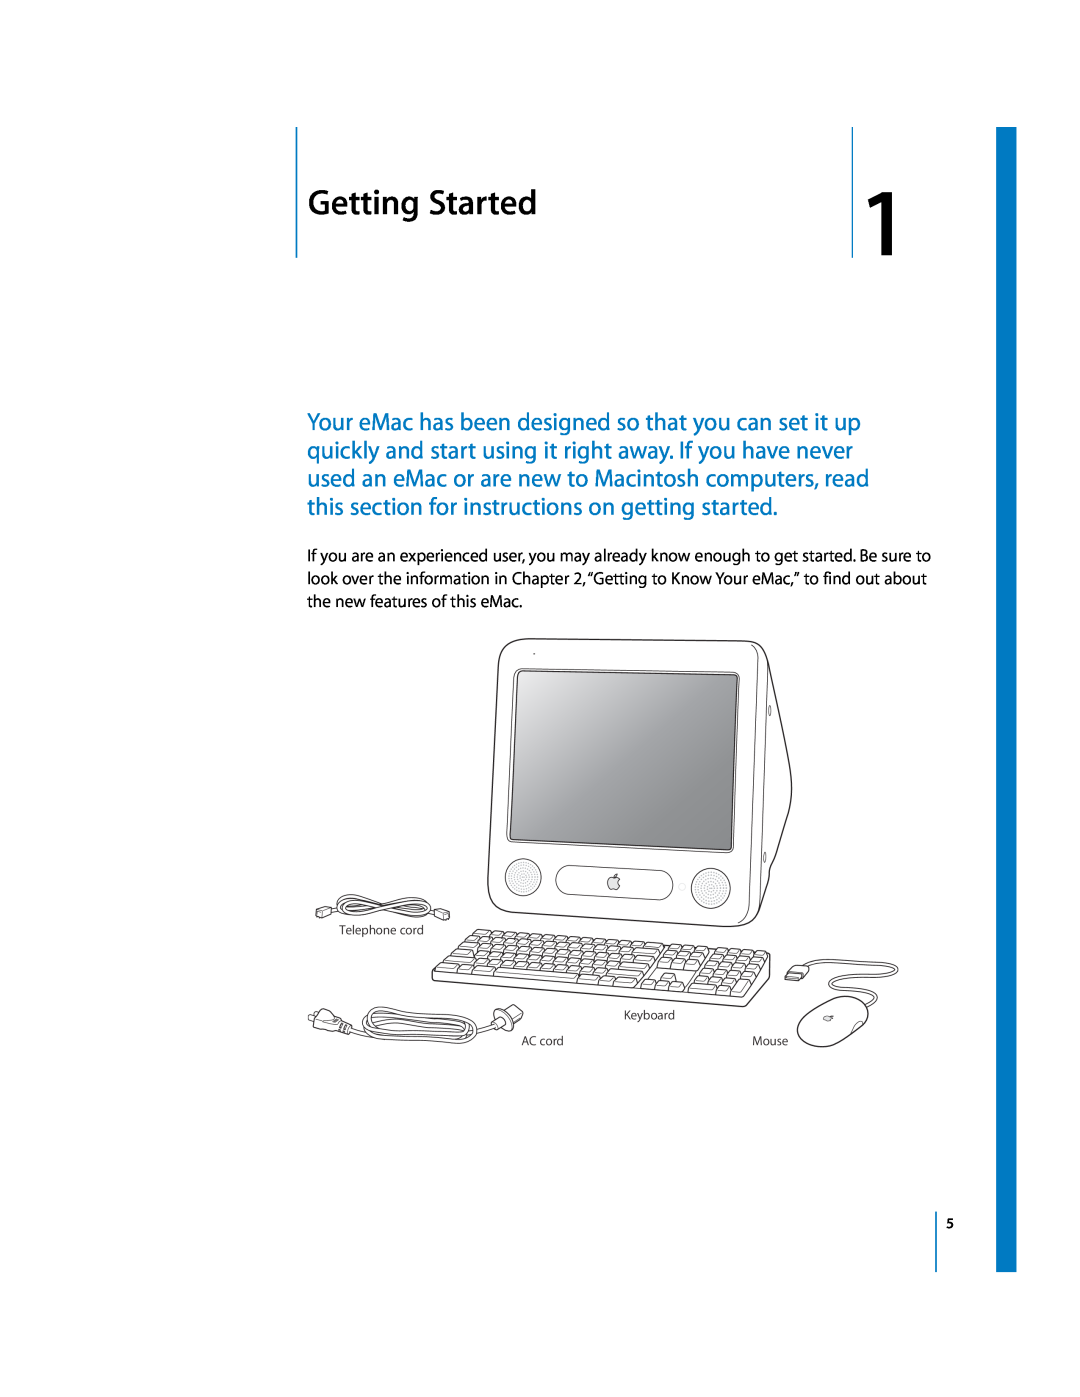 Apple EMac manual Getting Started, Telephone cord Keyboard, AC cord 